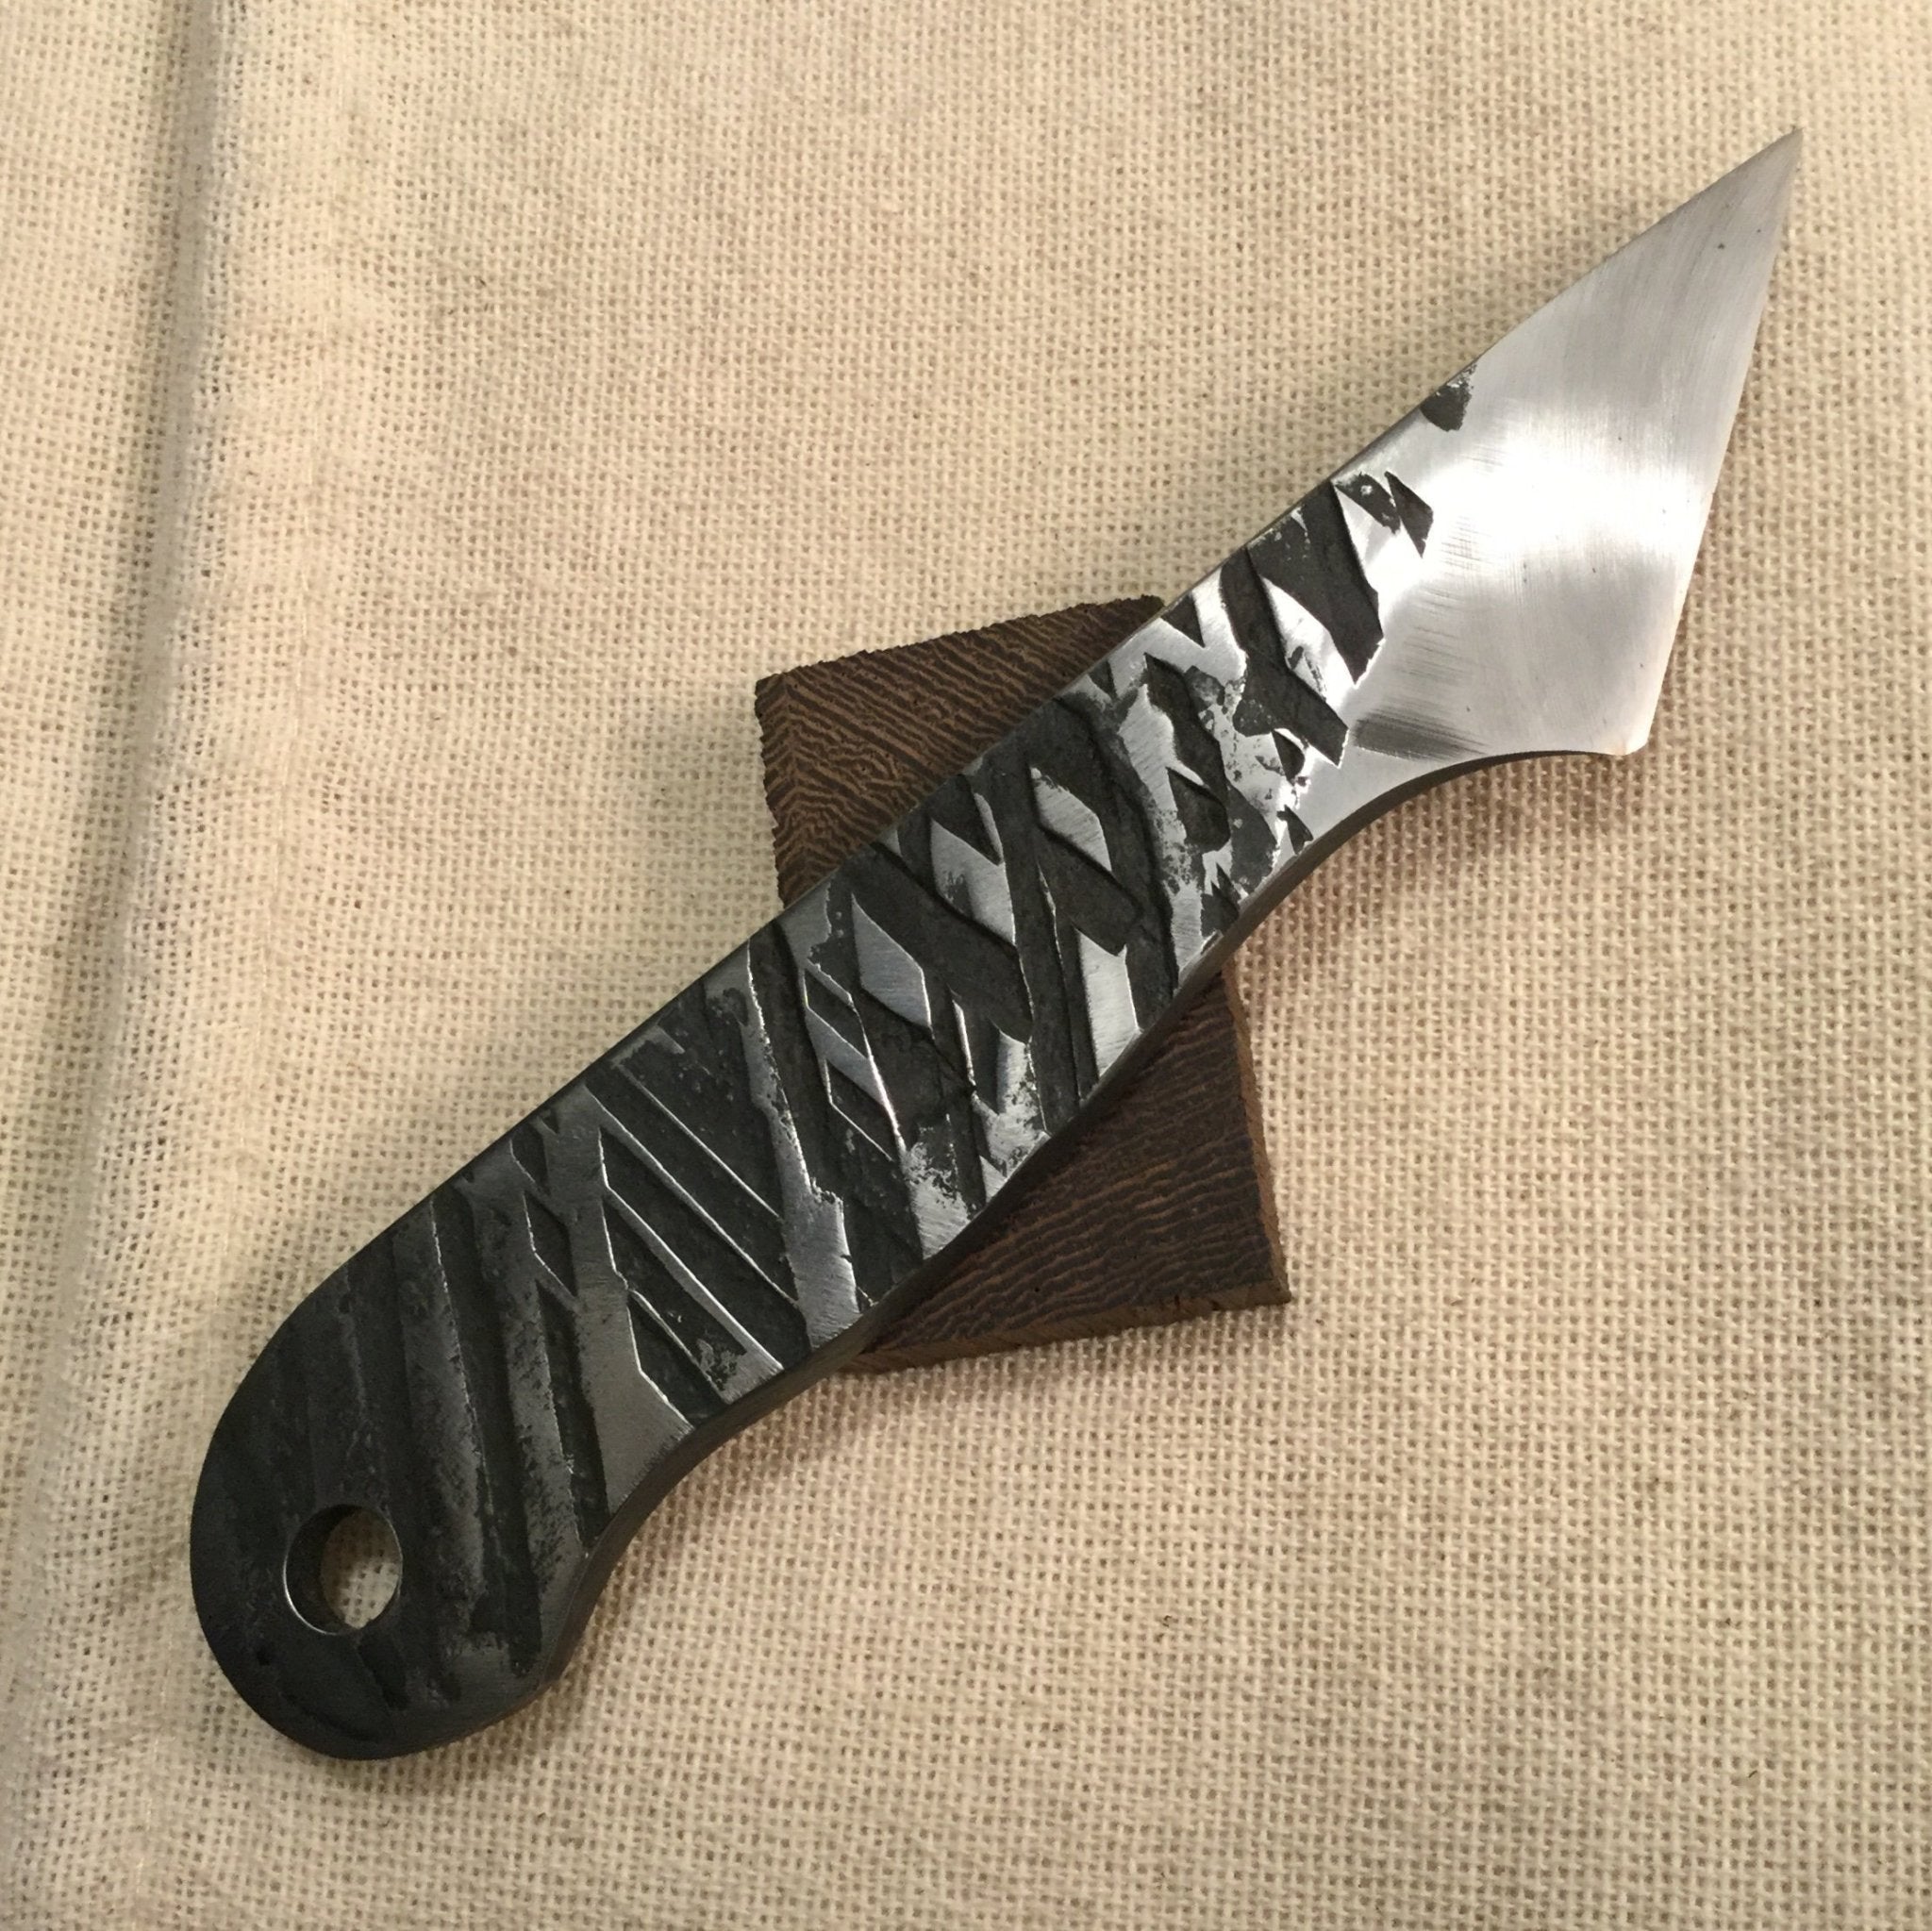 Kiridashi knife blades